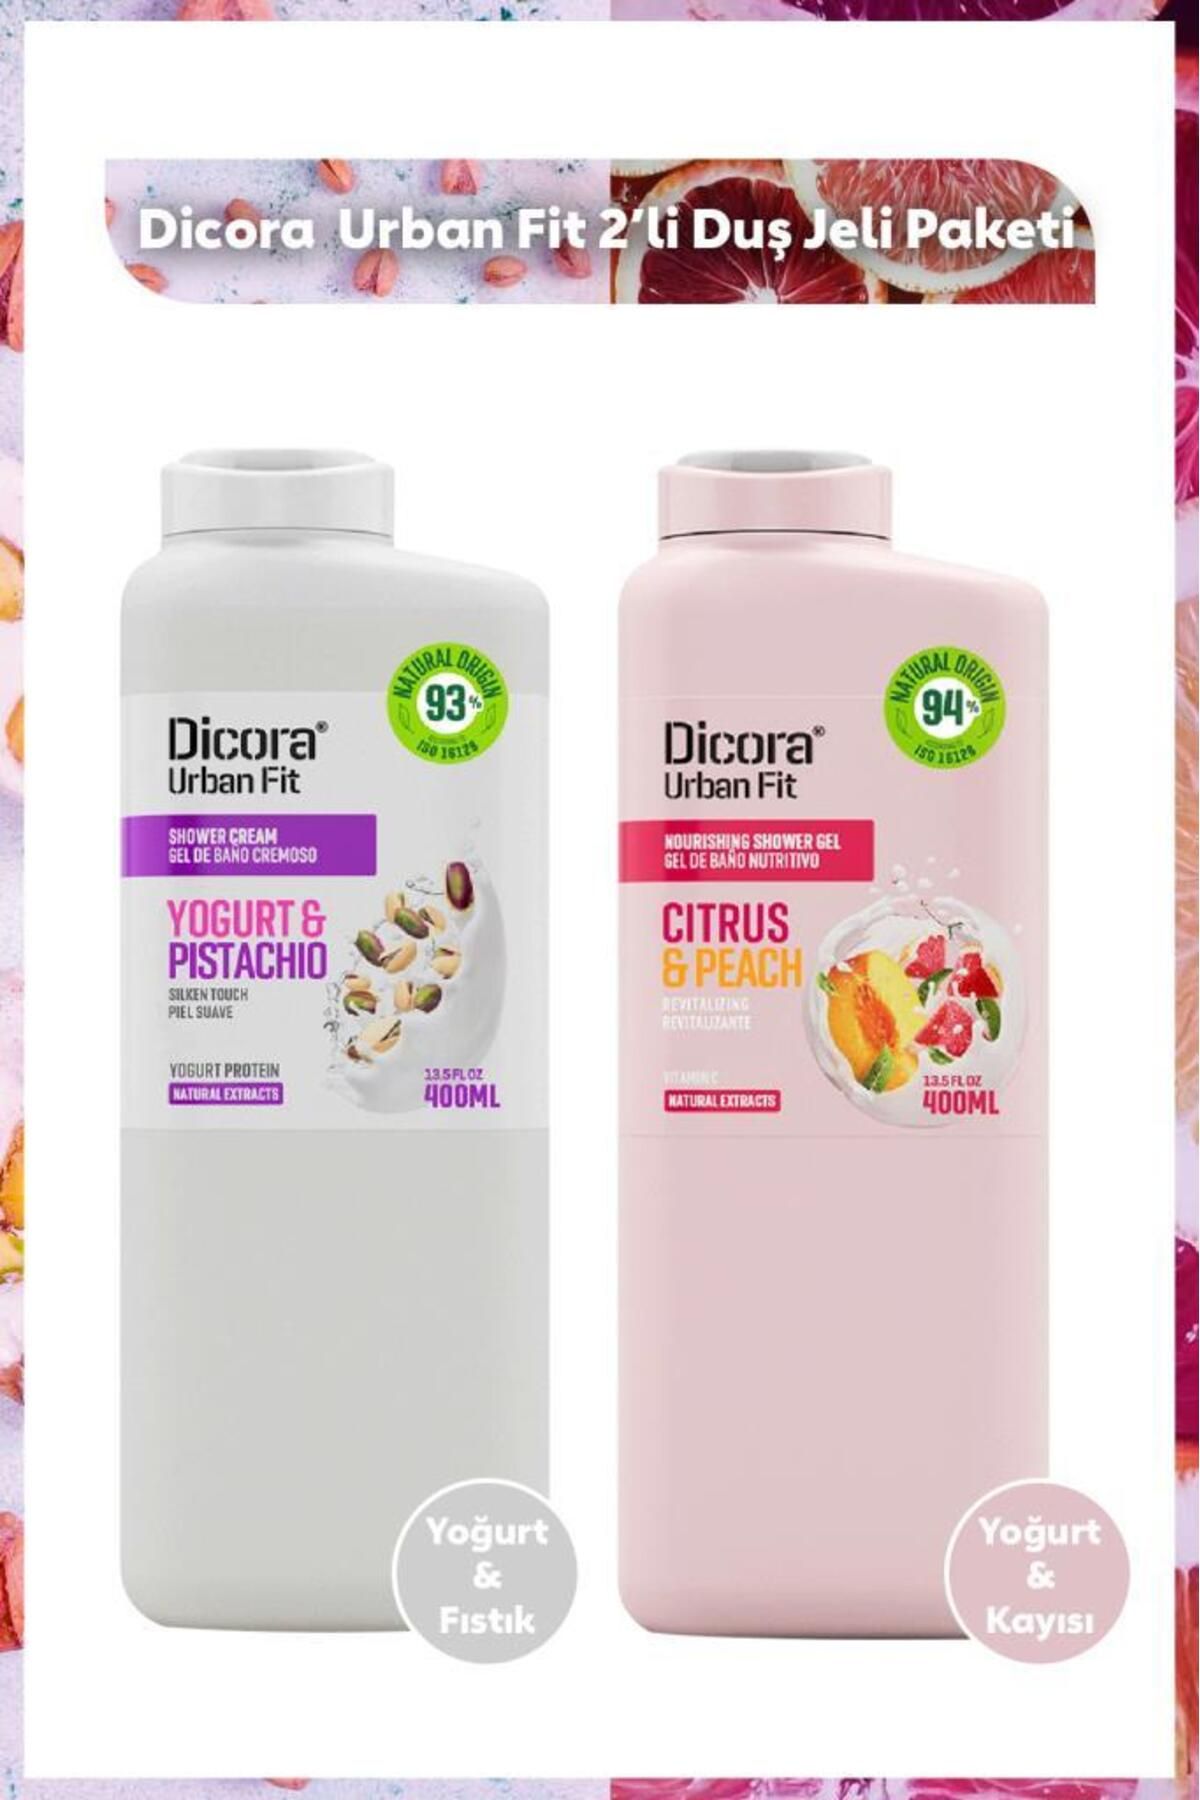 DICORA URBAN FIT Yogurt & Pistachio Fıstık C Vitamini Narenciye & Kayısı Aromalı Duş Jeli Paketi